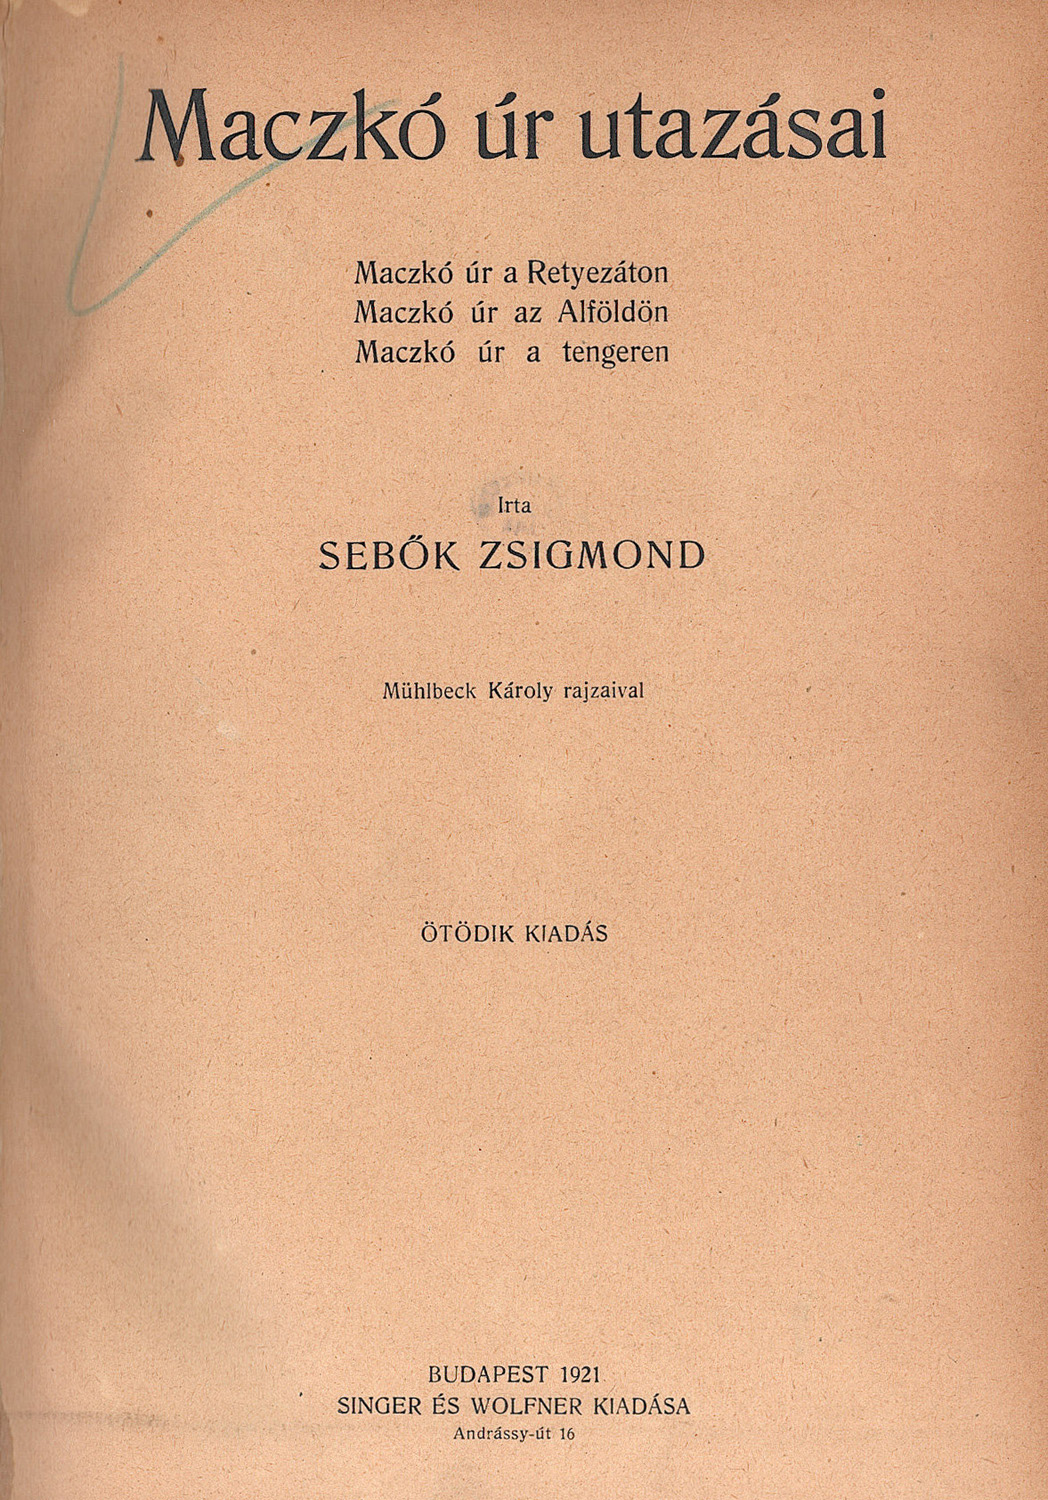 Maczkó úr utazásai. Budapest, Singer és Wolfner Kiadása, 1921. 